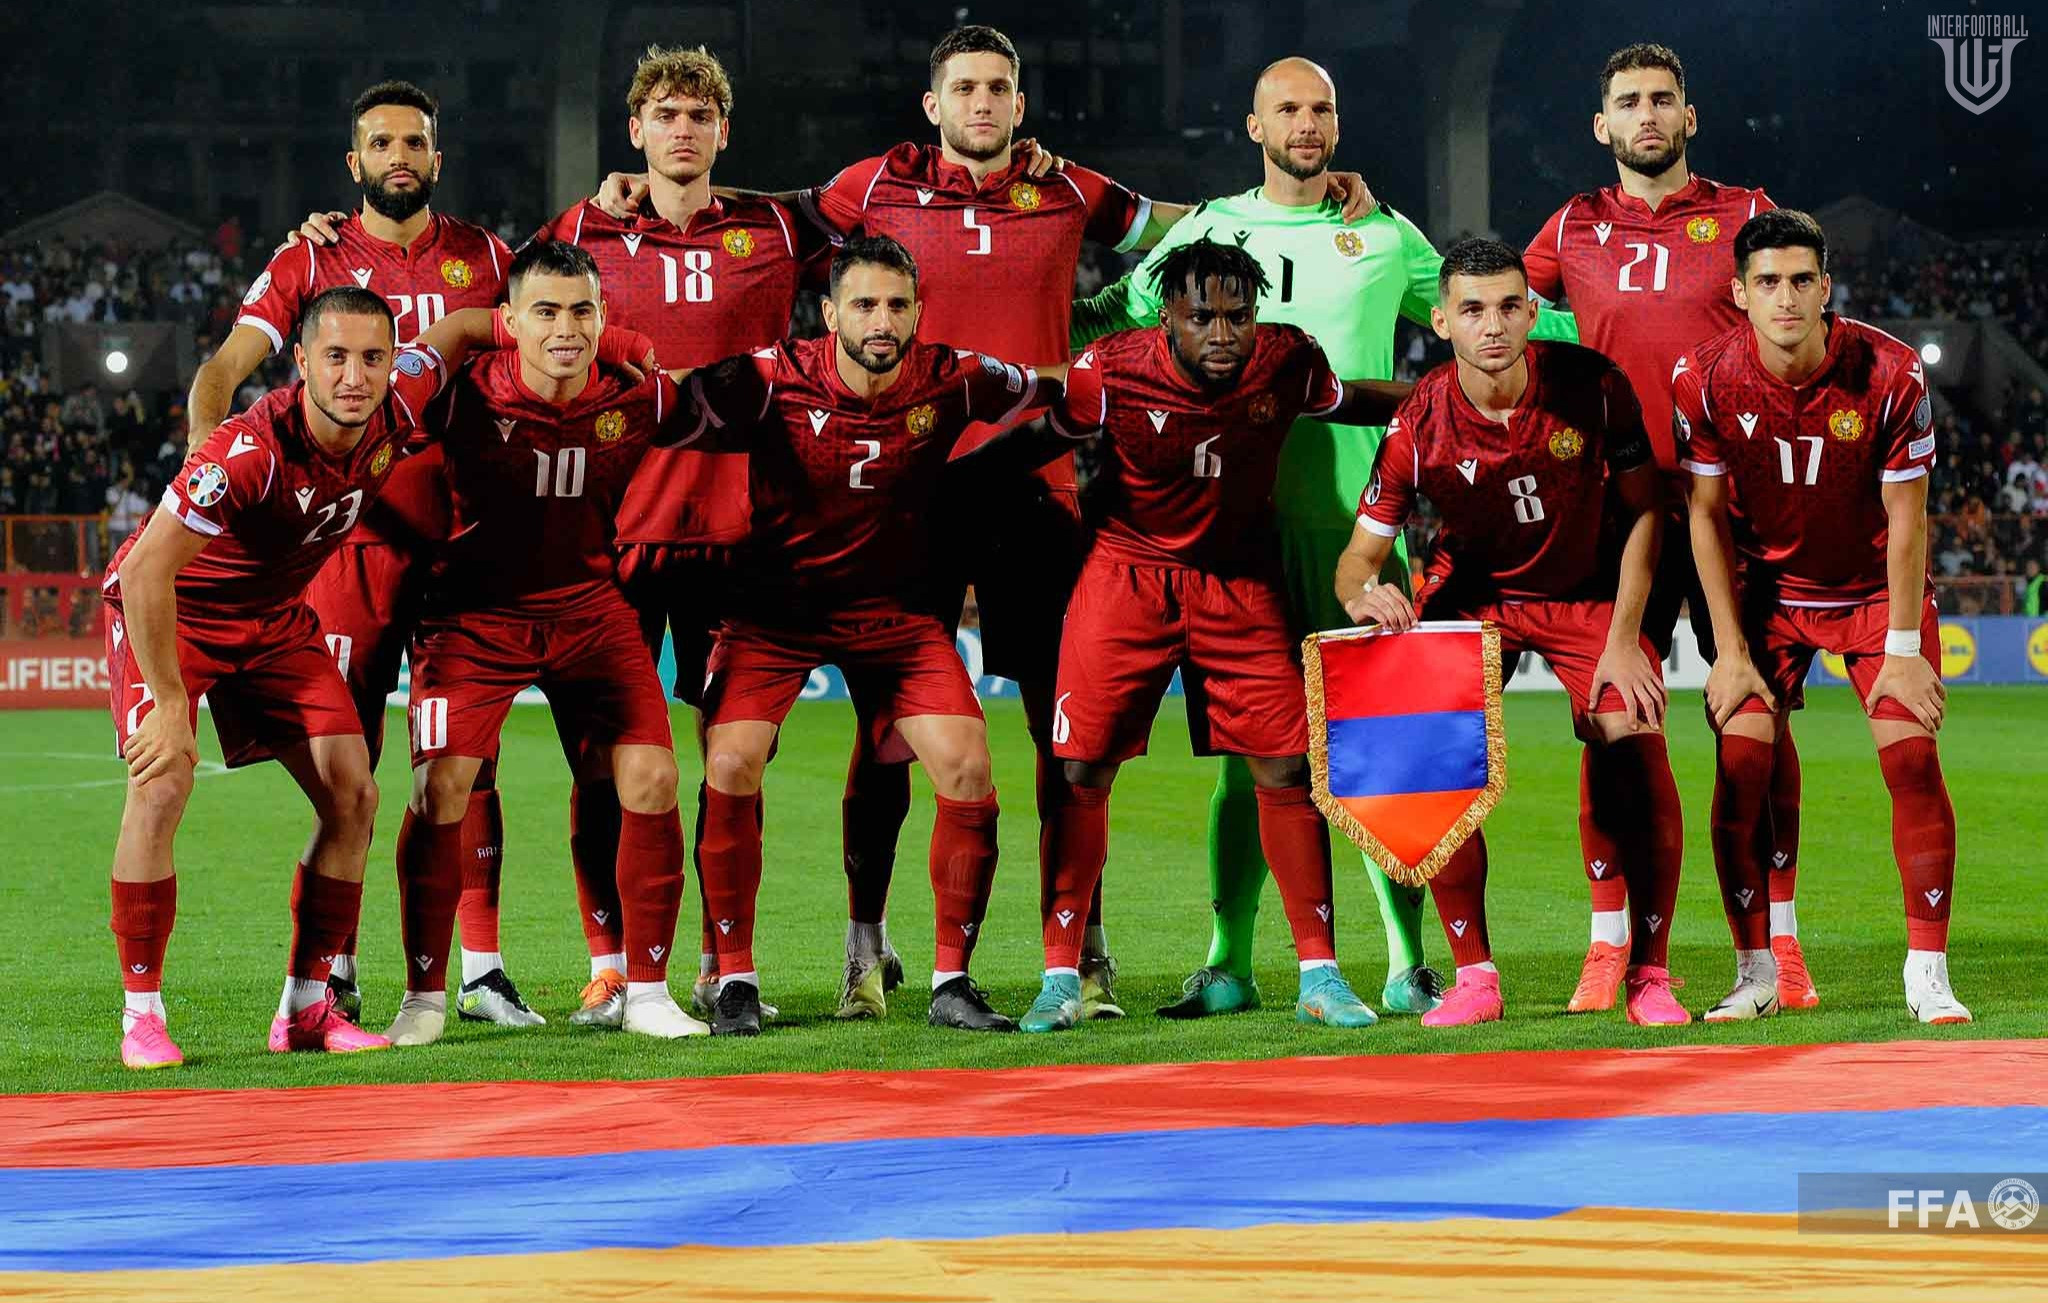 Հայաստանի հավաքականի ֆուտբոլիստների գնահատականները Խորվաթիայի դեմ խաղում` ըստ SofaScore-ի և Whoscored-ի